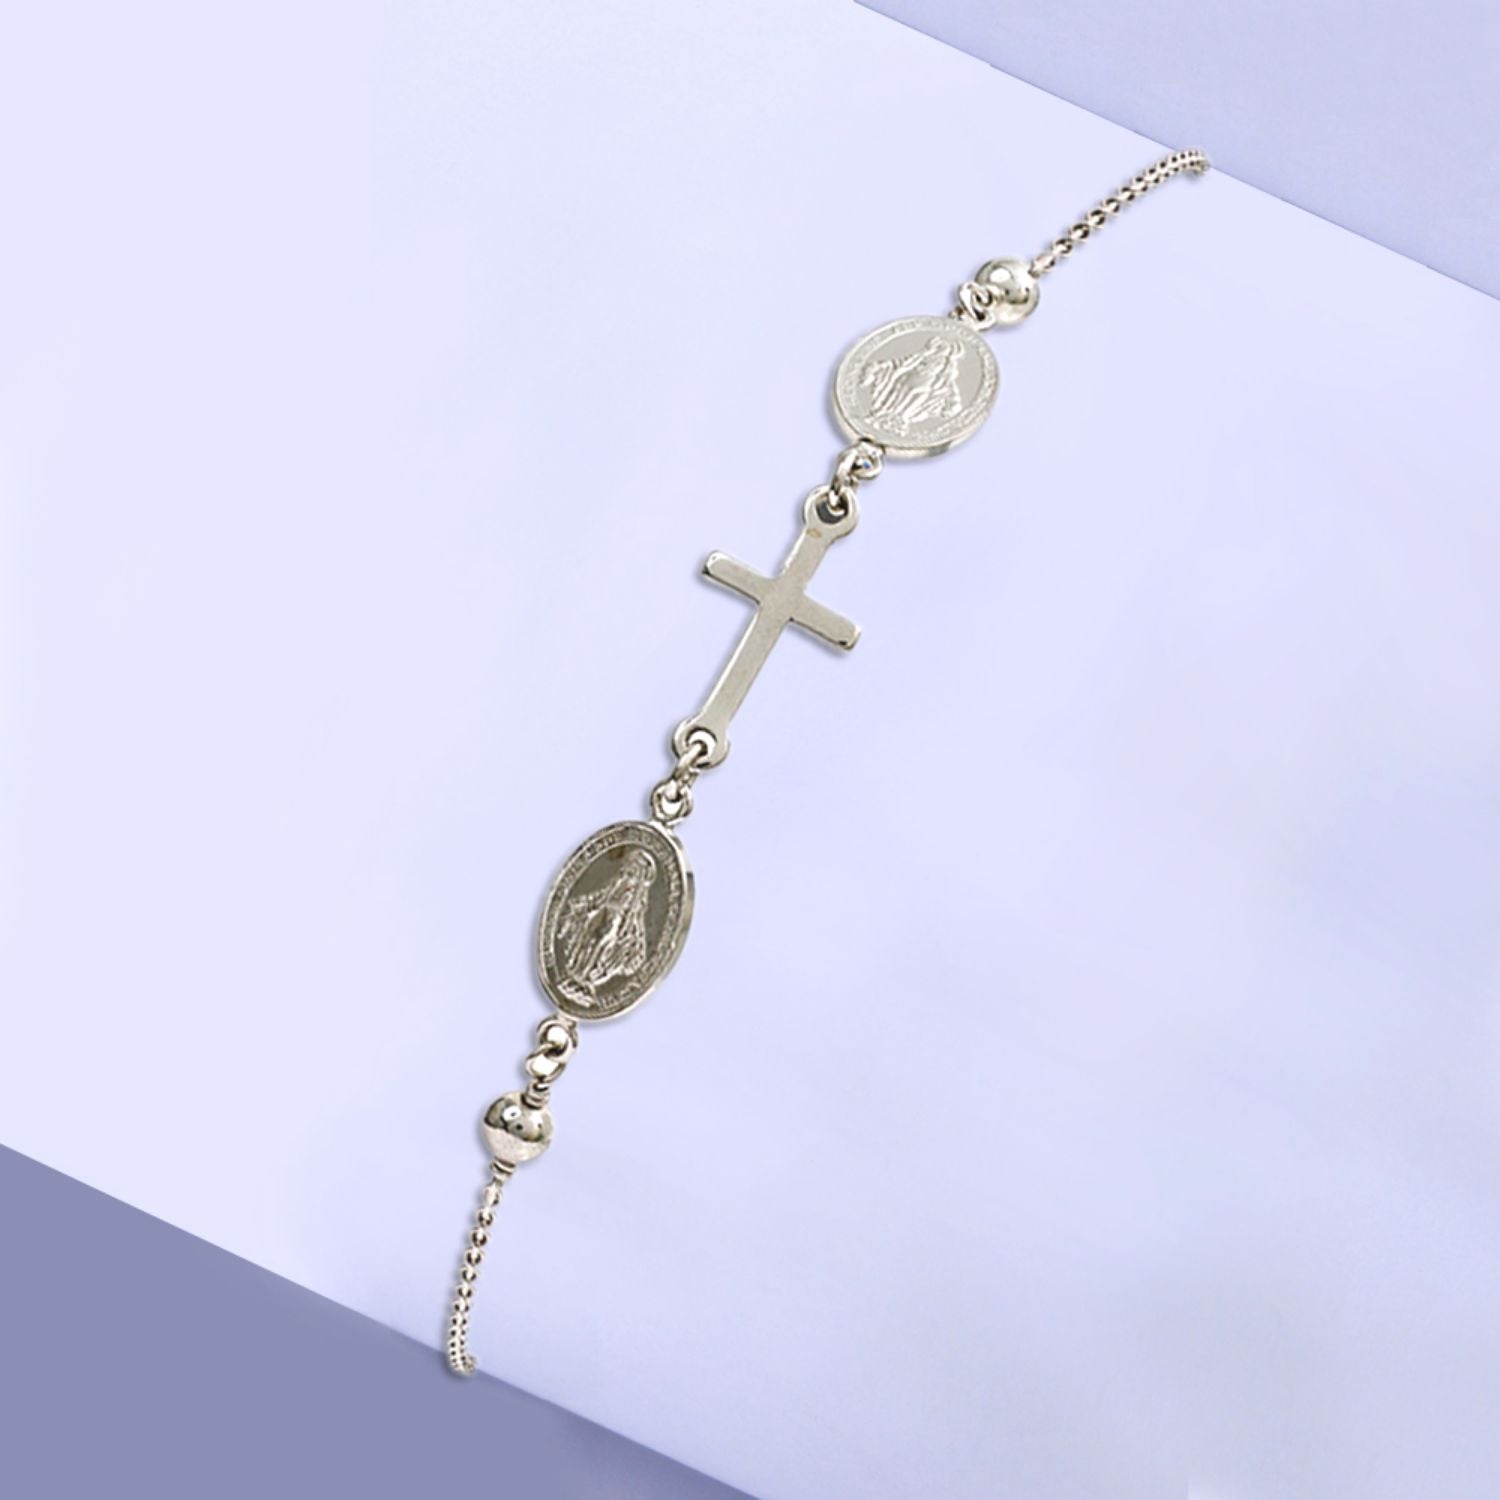 925 Sterling Silver Adjustable Sliding Mother Mary Cross Religious Bracelet for Women